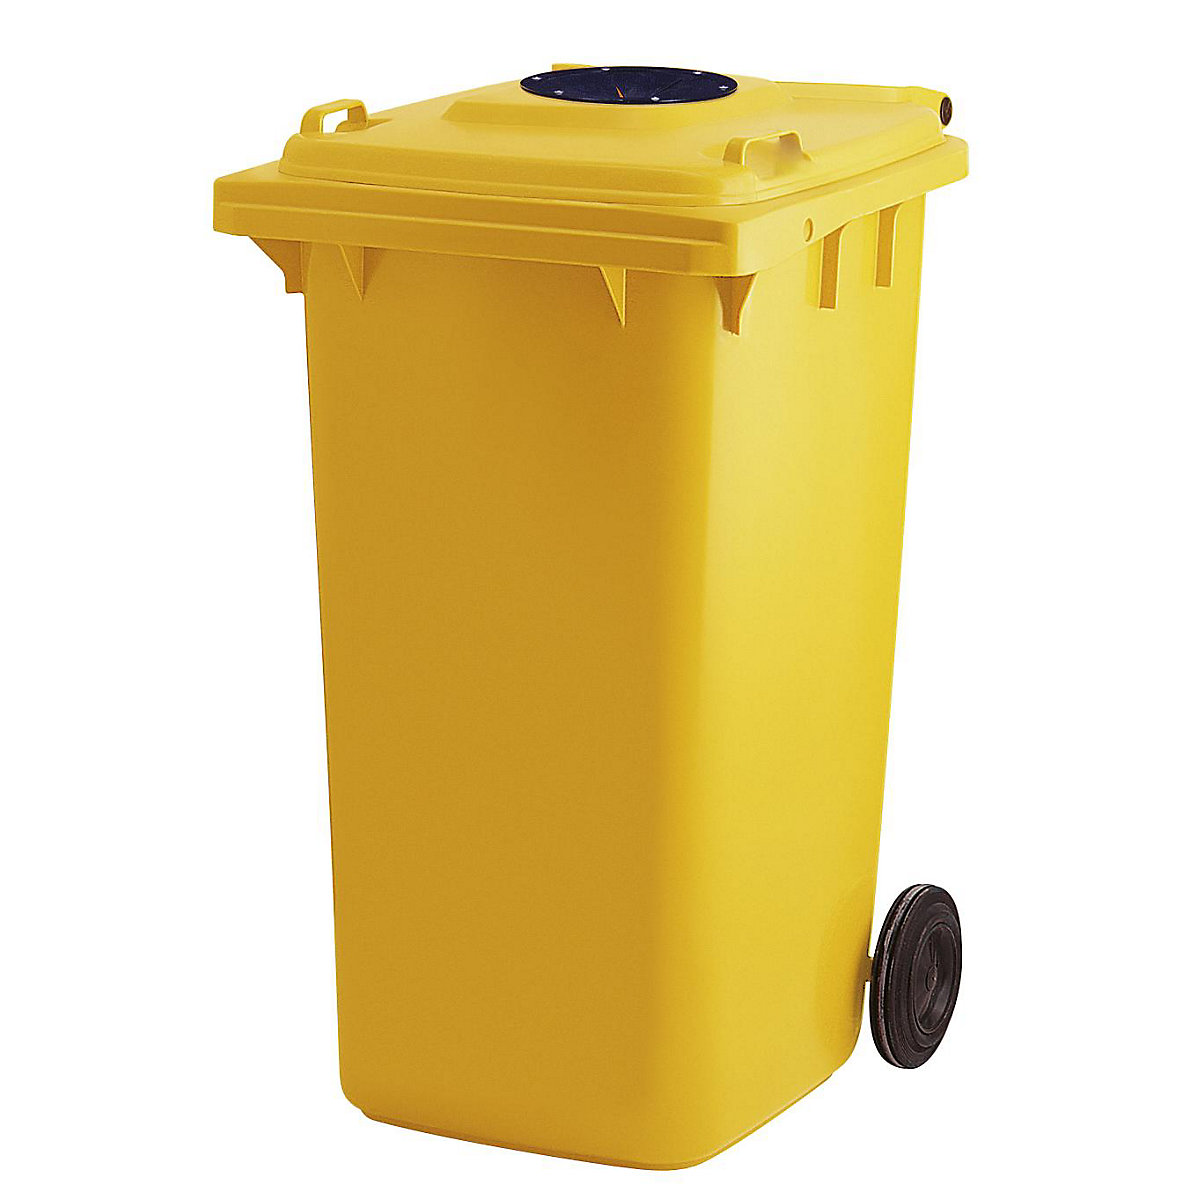 Waste bin with deposit hole, 240 l